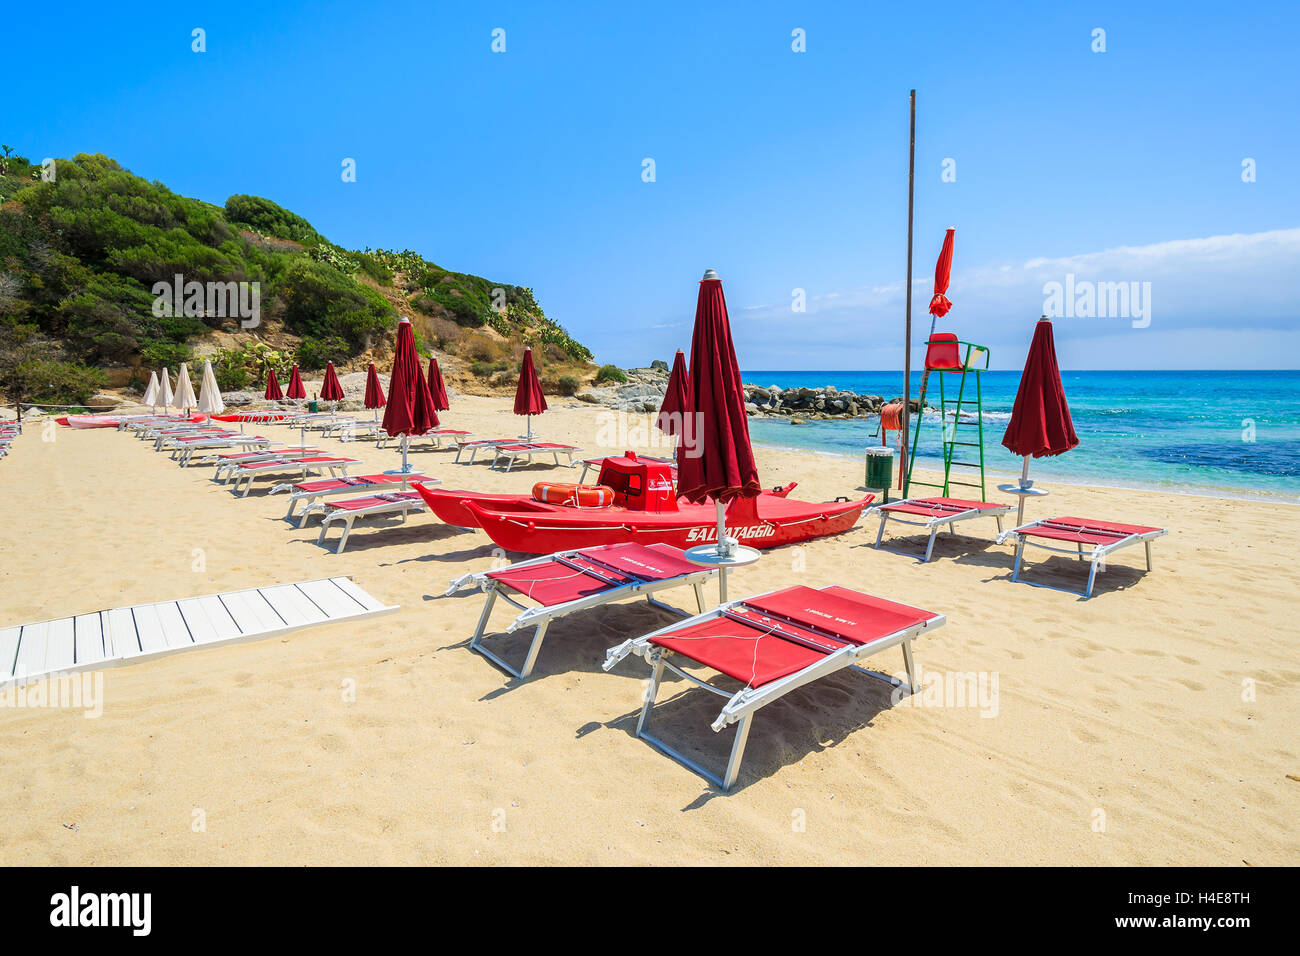 CALA SINZIAS Beach, l'isola di Sardegna - 24 Maggio 2014: lettini su Cala Sinzias beach sulla giornata di sole, l'isola di Sardegna, Italia. Il sud della Sardegna è una popolare meta di vacanza per gli italiani in estate. Foto Stock